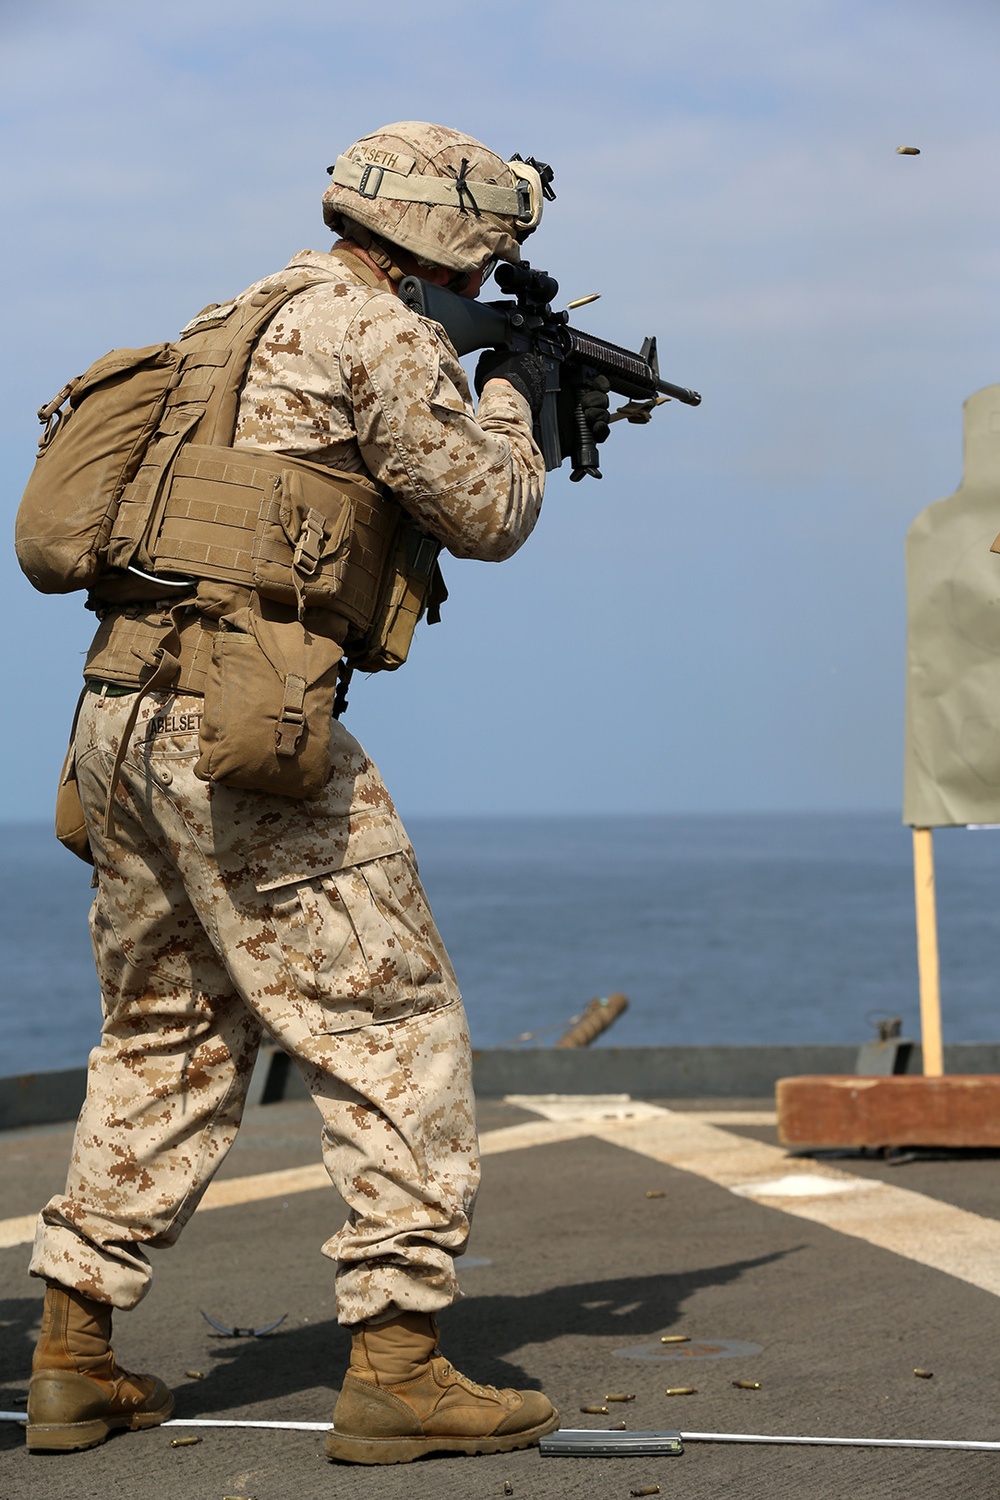 11th MEU Marines practice close quarters tactics on USS Comstock